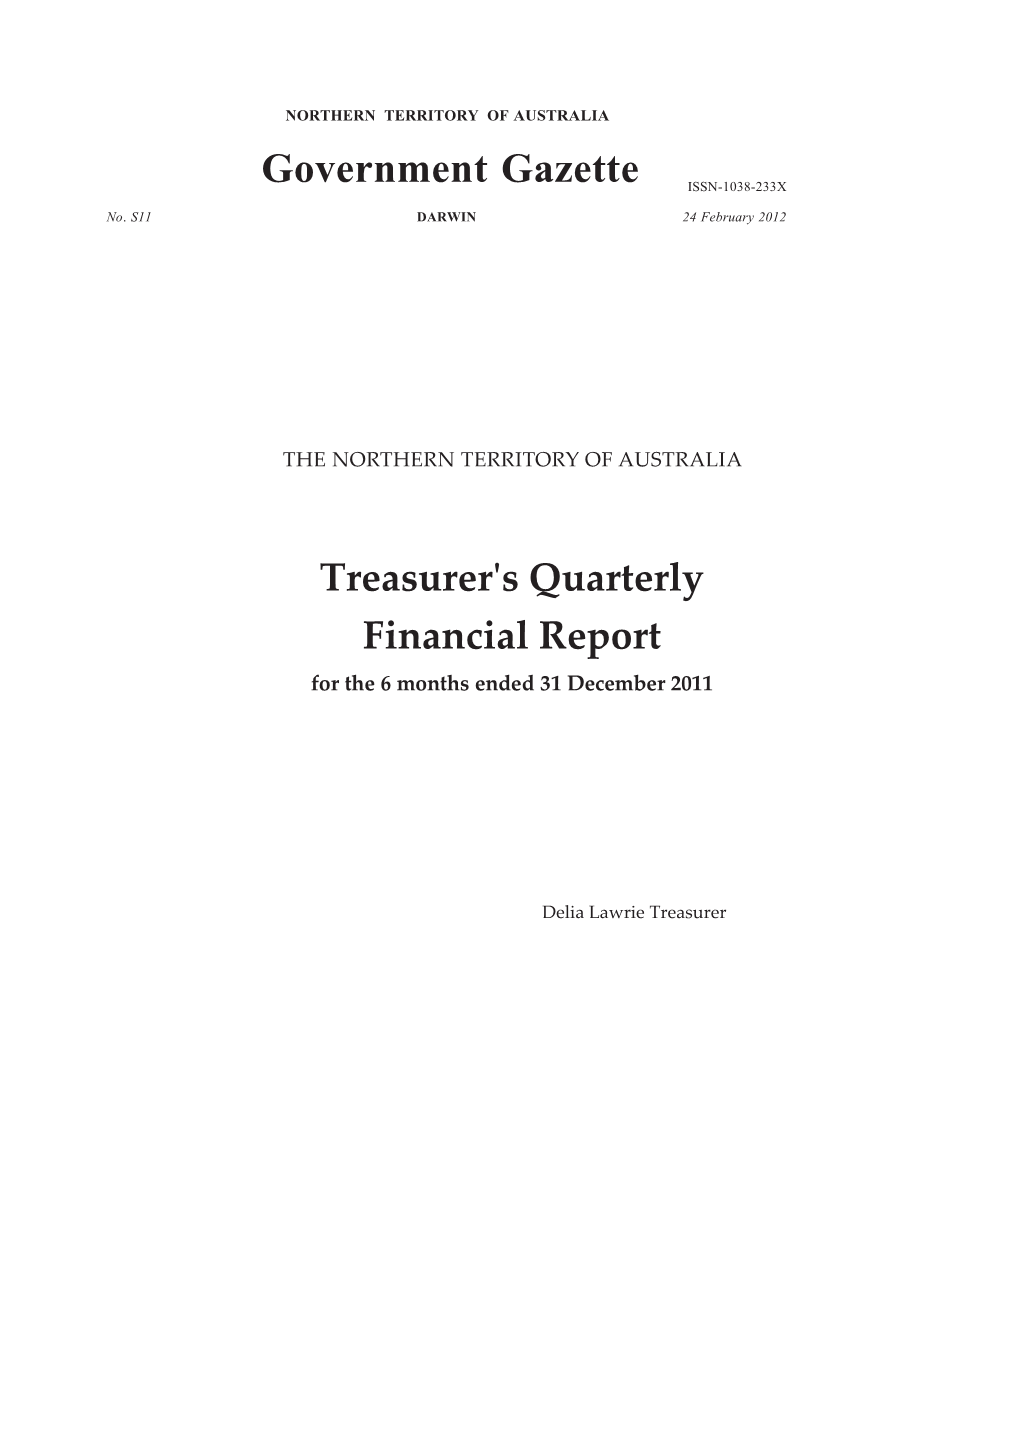 Treasurer's Quarterly Financial Report